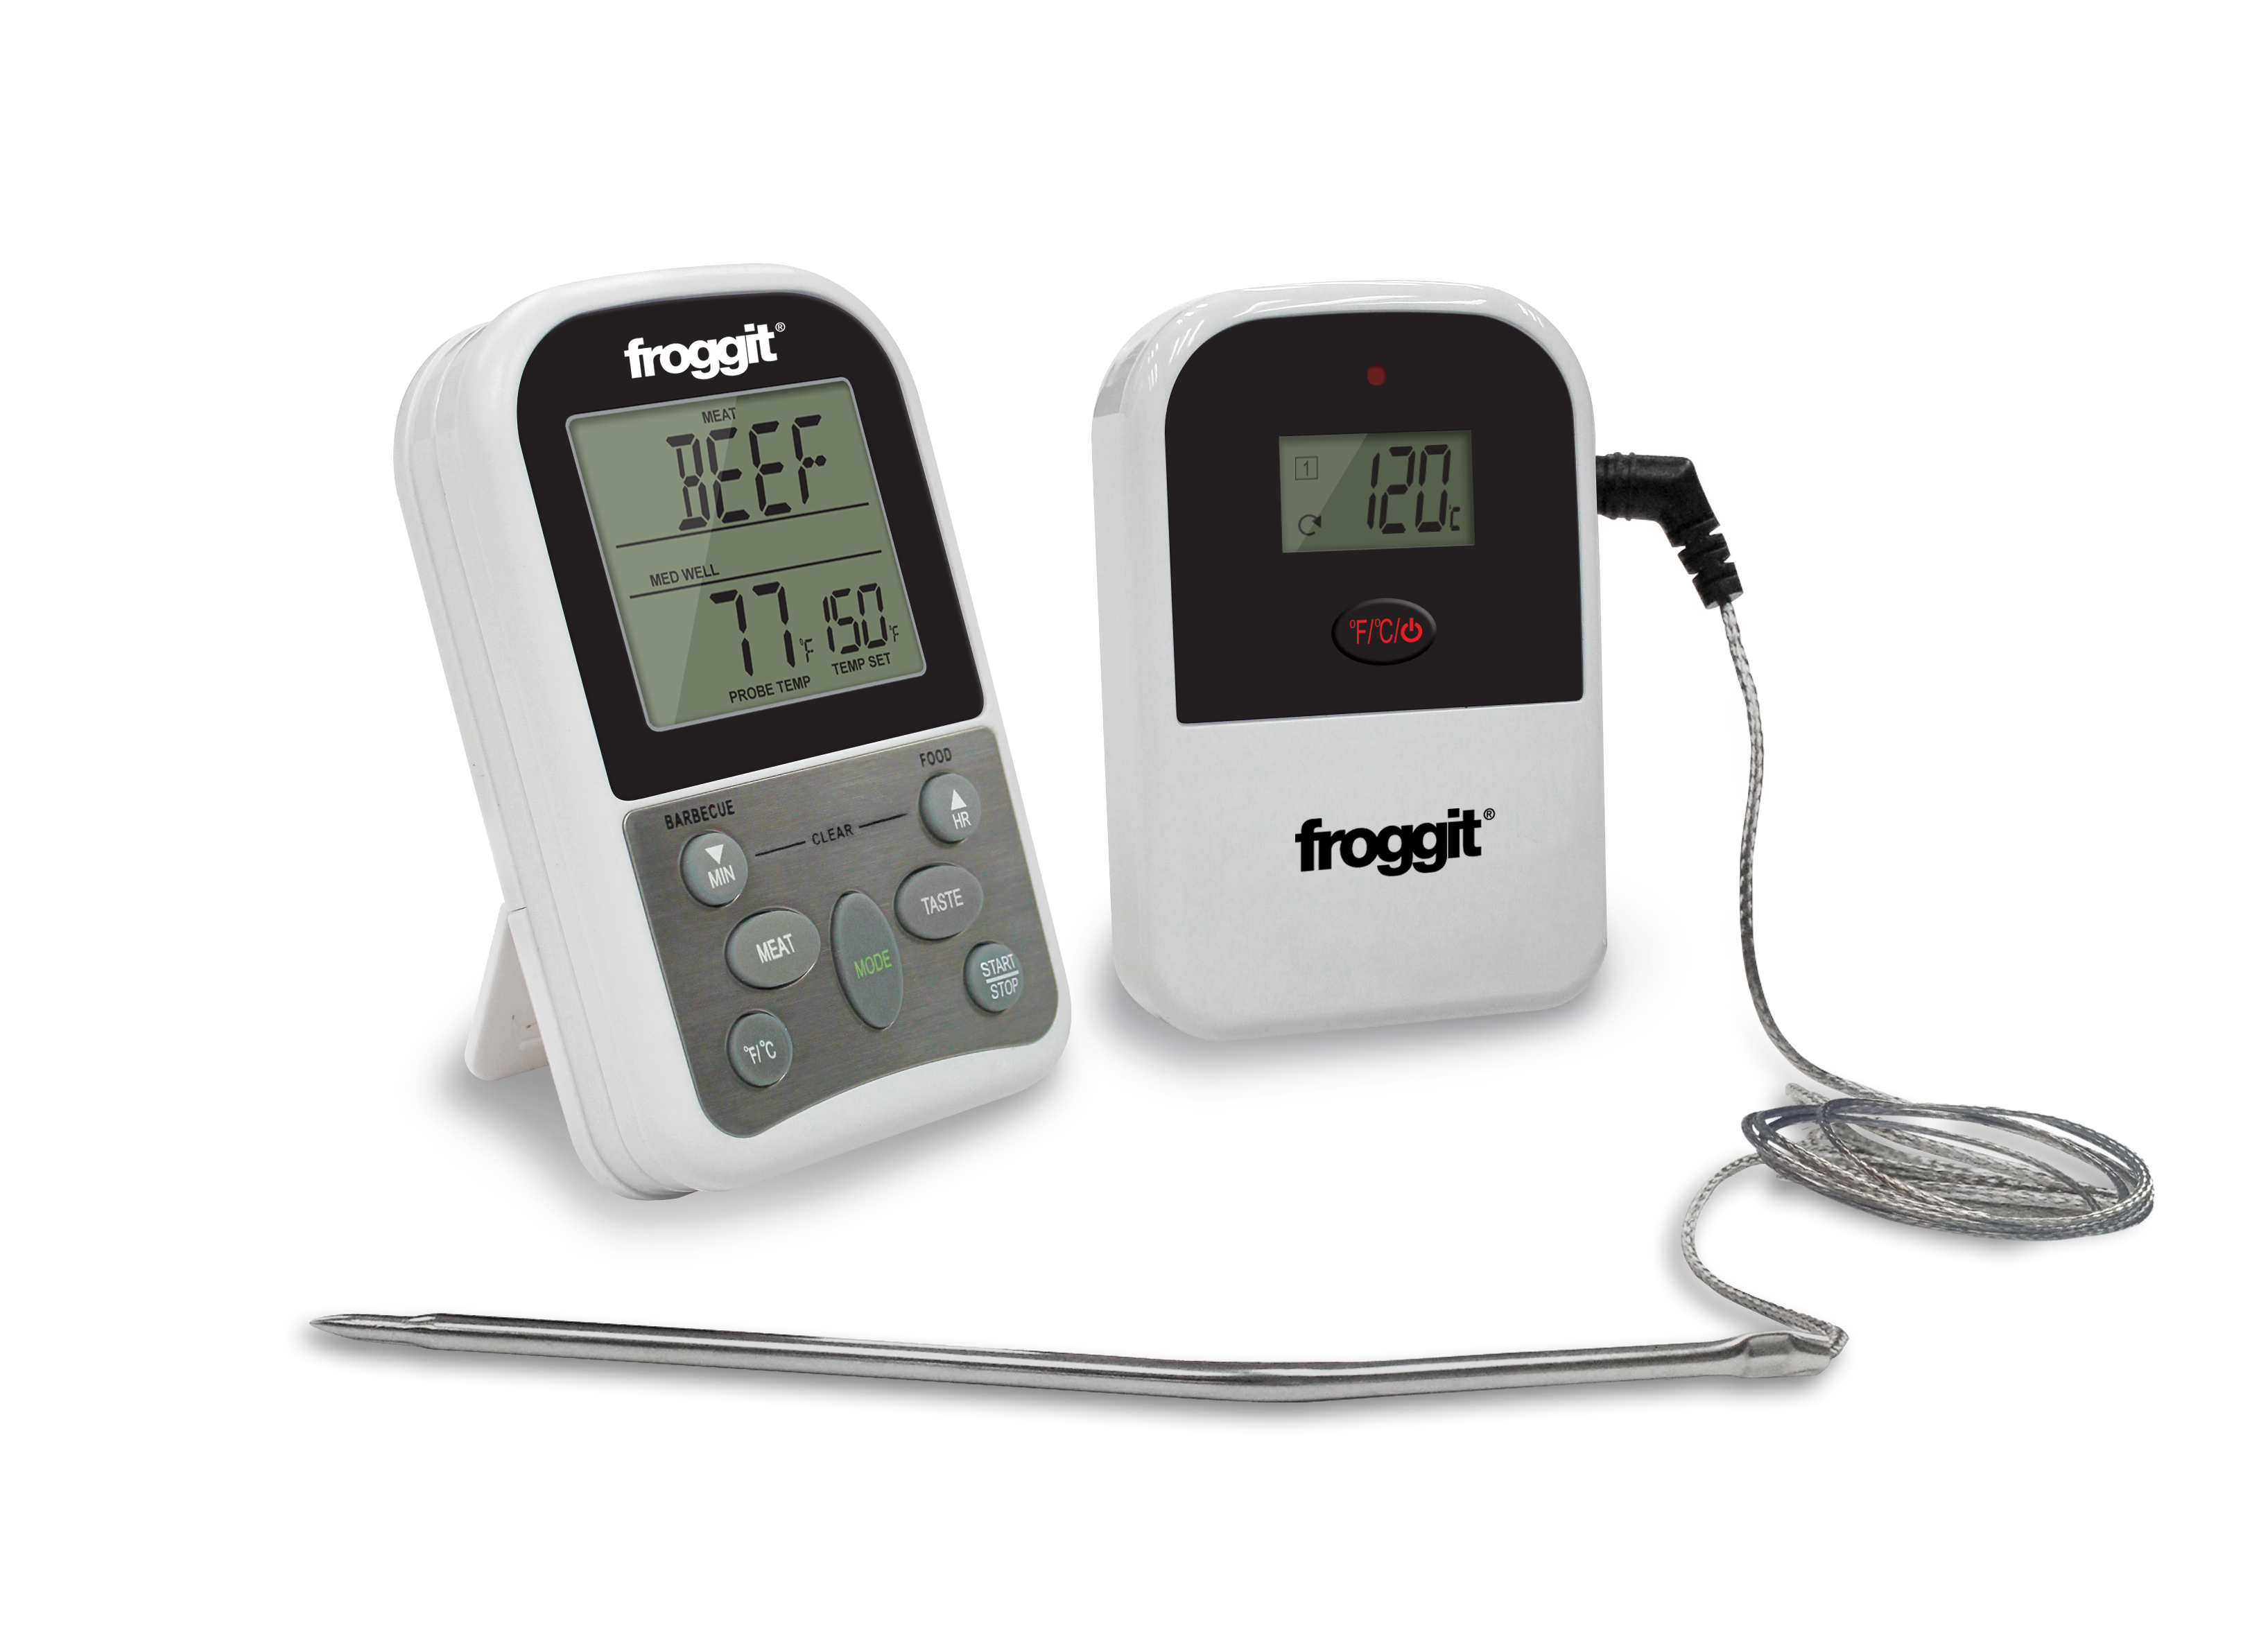 Digitales Grillthermometer Mit Temperatur-Fühler Für Fleisch Braten Steak BBQ